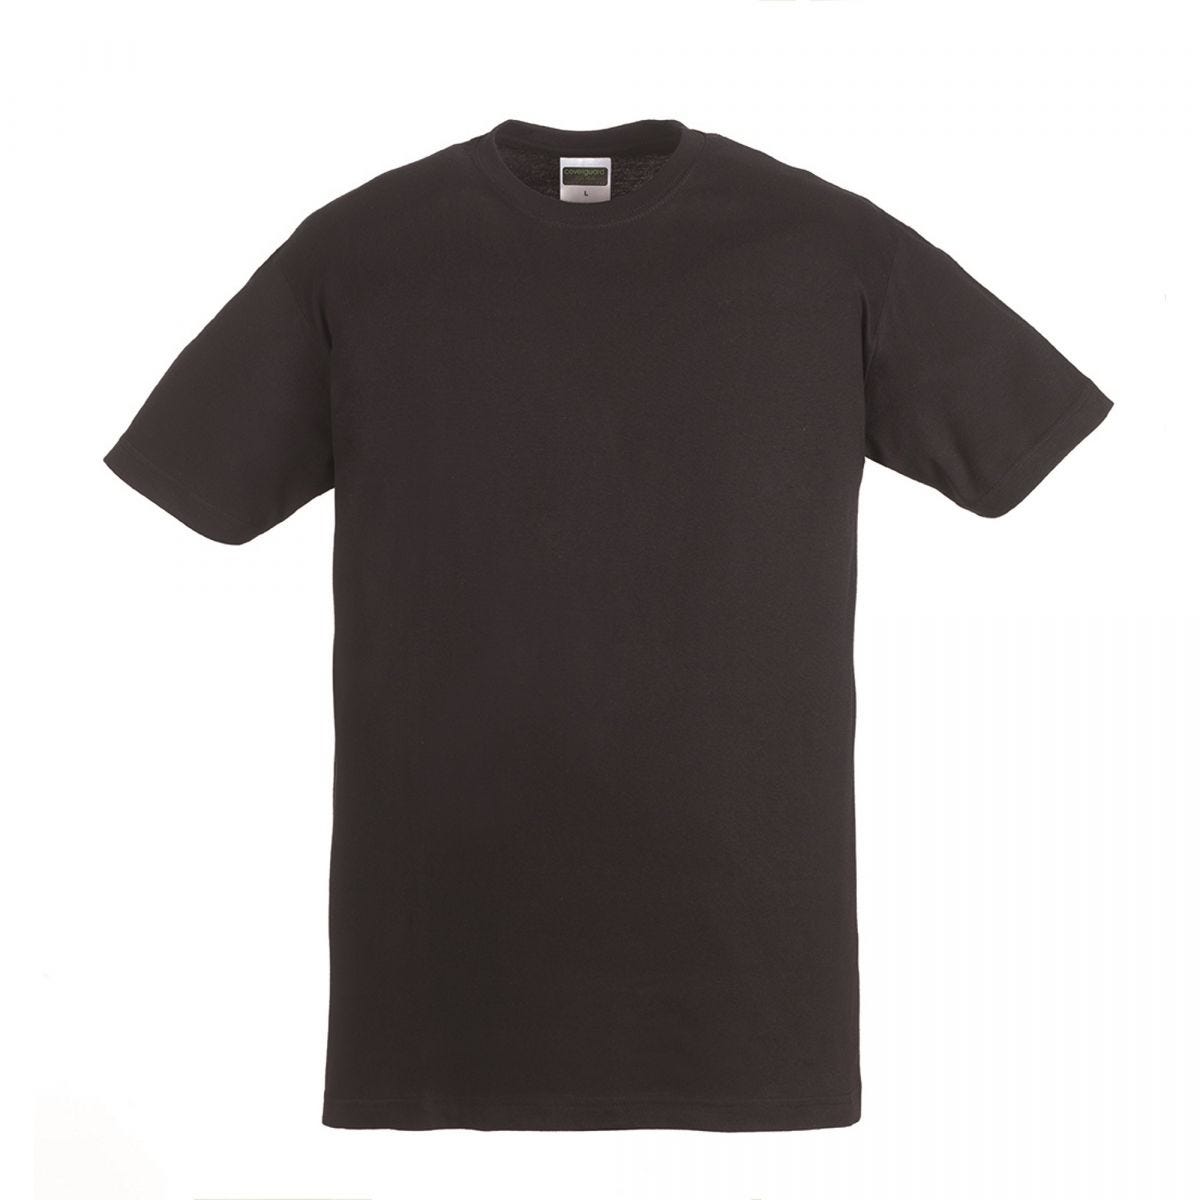 HIKE T-shirt MC noir, 100% coton, 190g/m² - COVERGUARD - Taille L 0